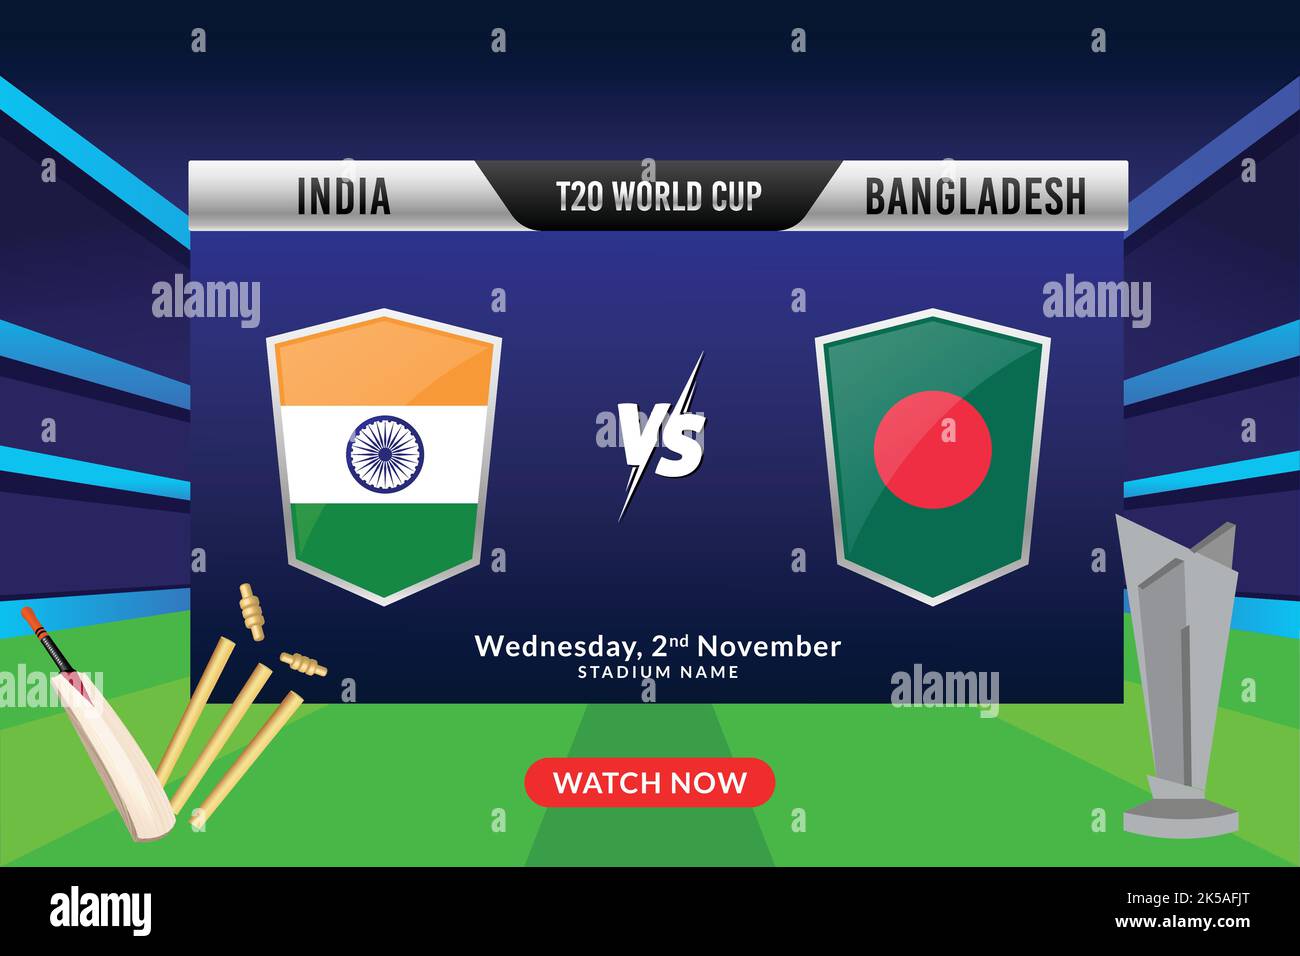 Cricket-Konzept mit Silver Winning Trophy der teilnehmenden Team A vs B auf Stadium Lights Hintergrund. Fußball-Weltmeisterschaft T20. Stock Vektor